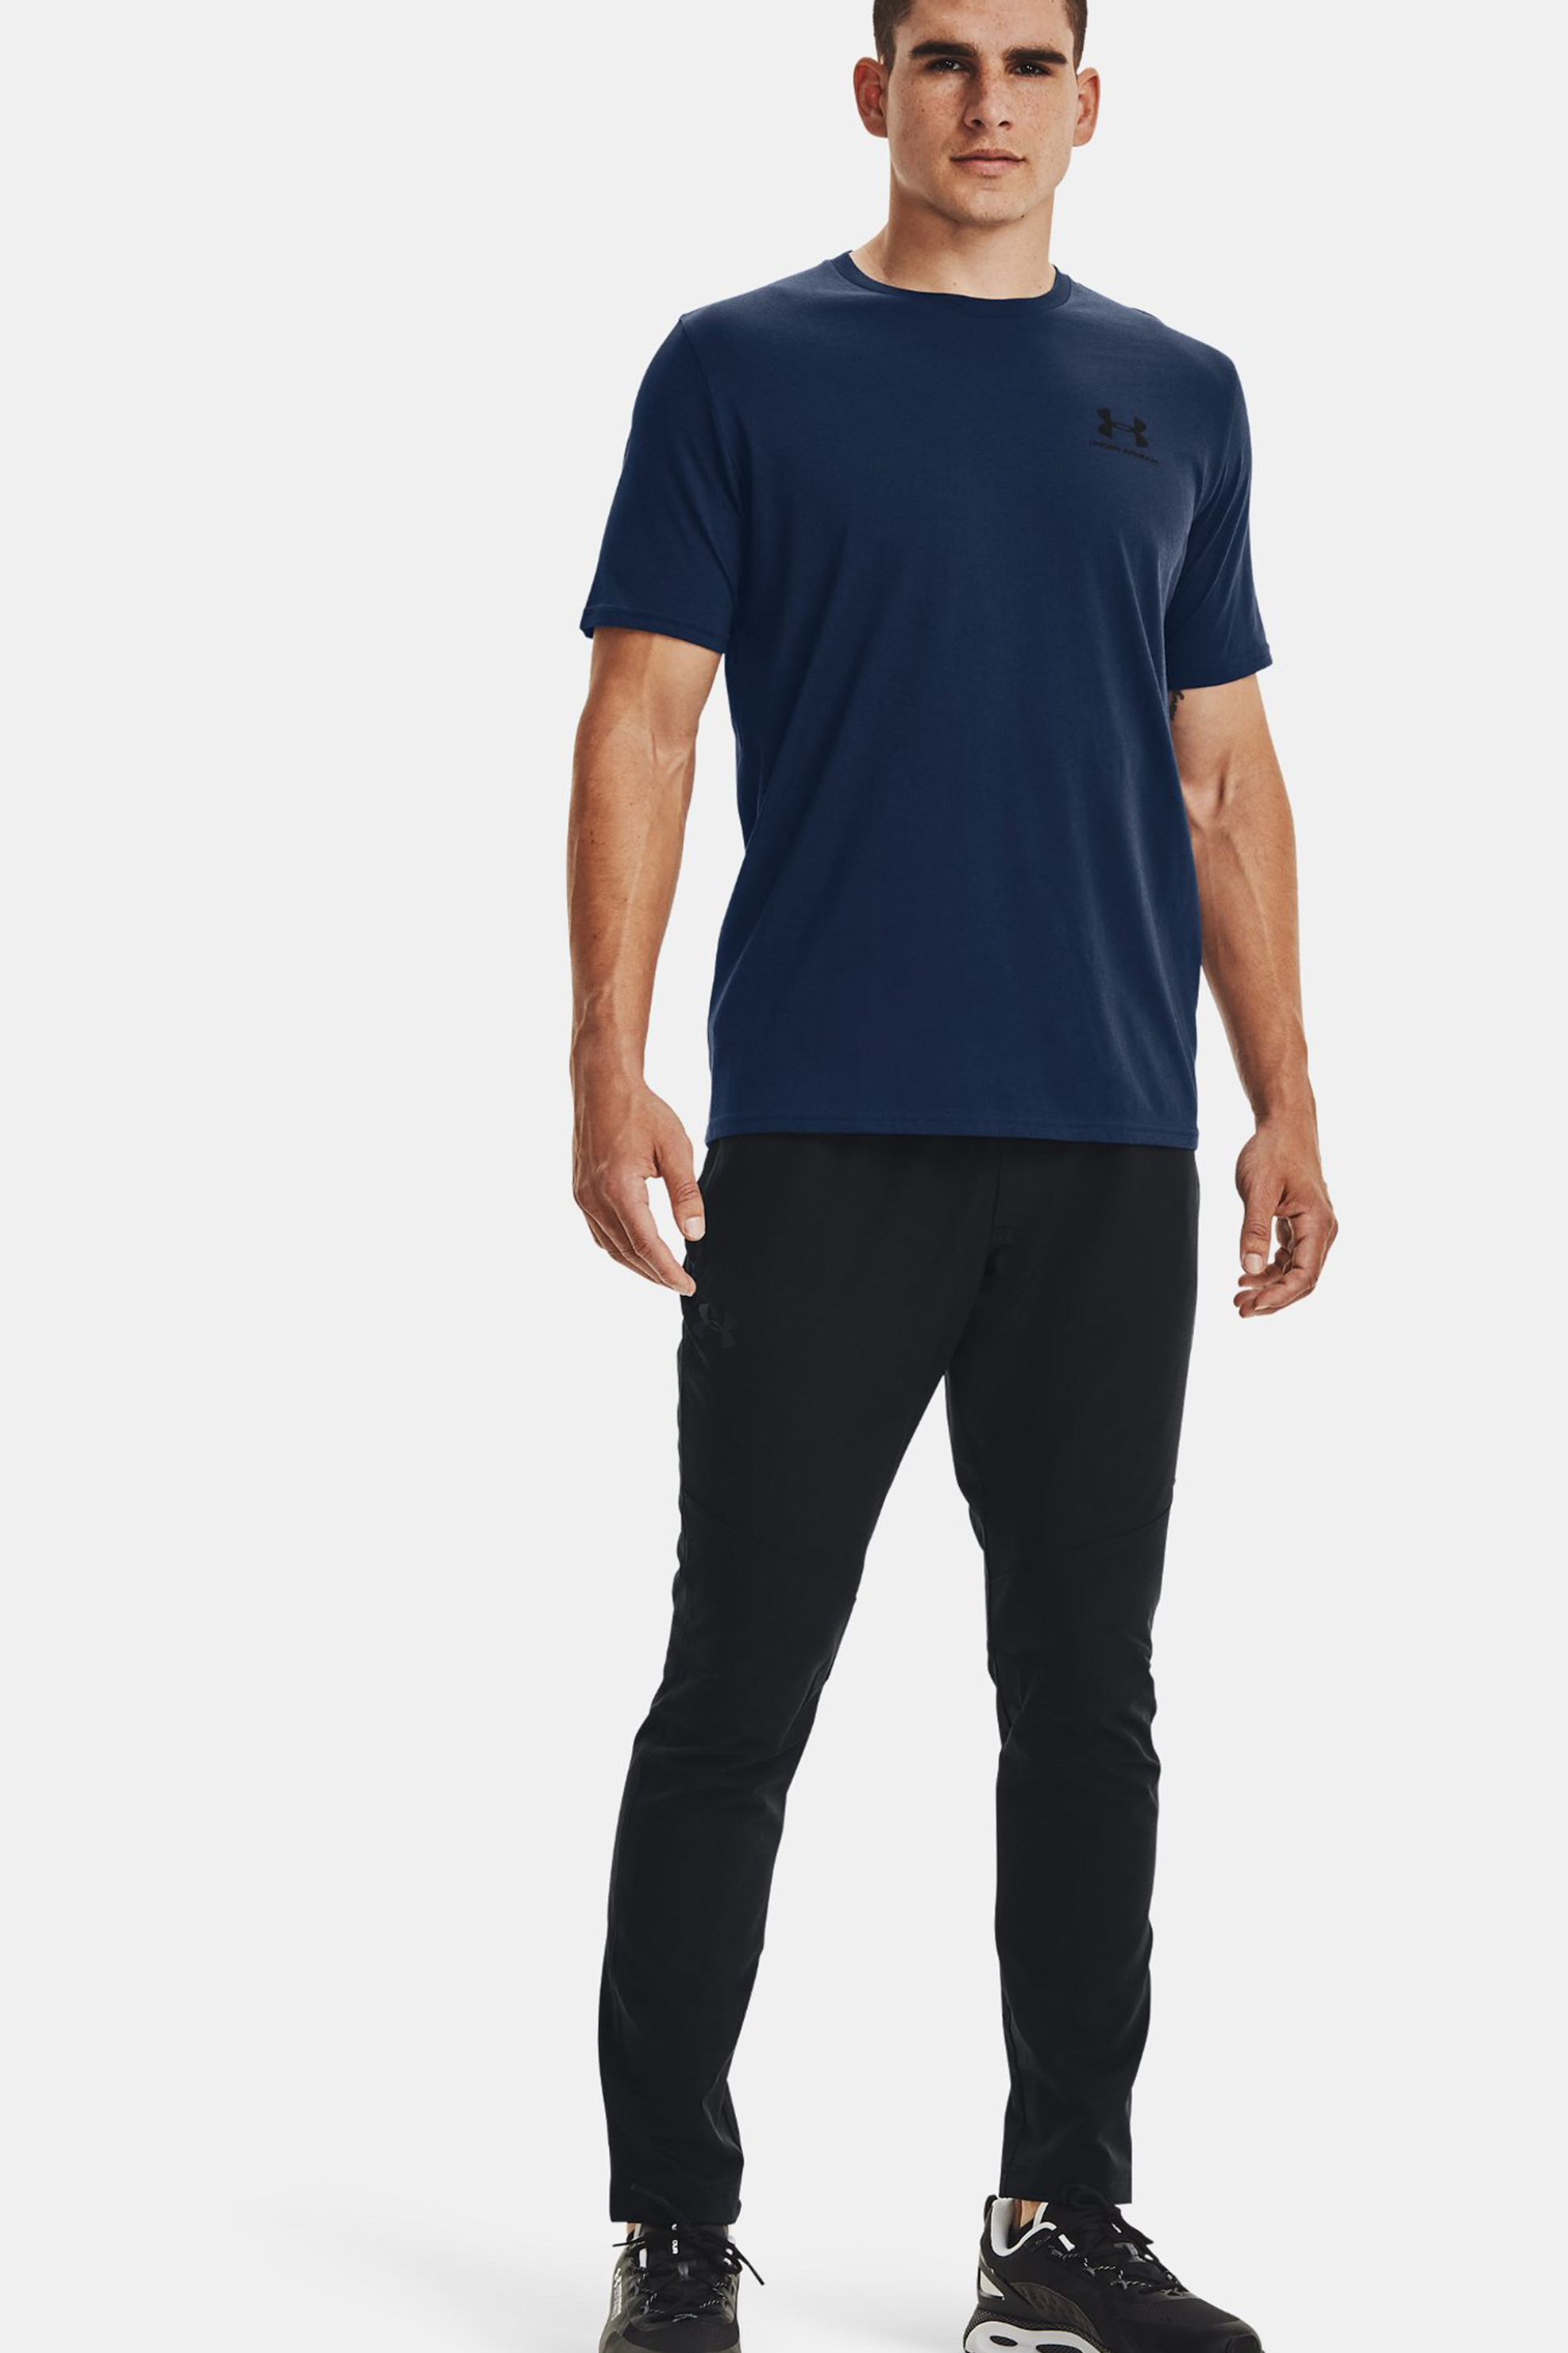 Άνδρας > ΡΟΥΧΑ > Μπλούζες > T-Shirts Under Armour ανδρικό T-shirt με logo print "UA Sportstyle" - 1326799 Μπλε Σκούρο